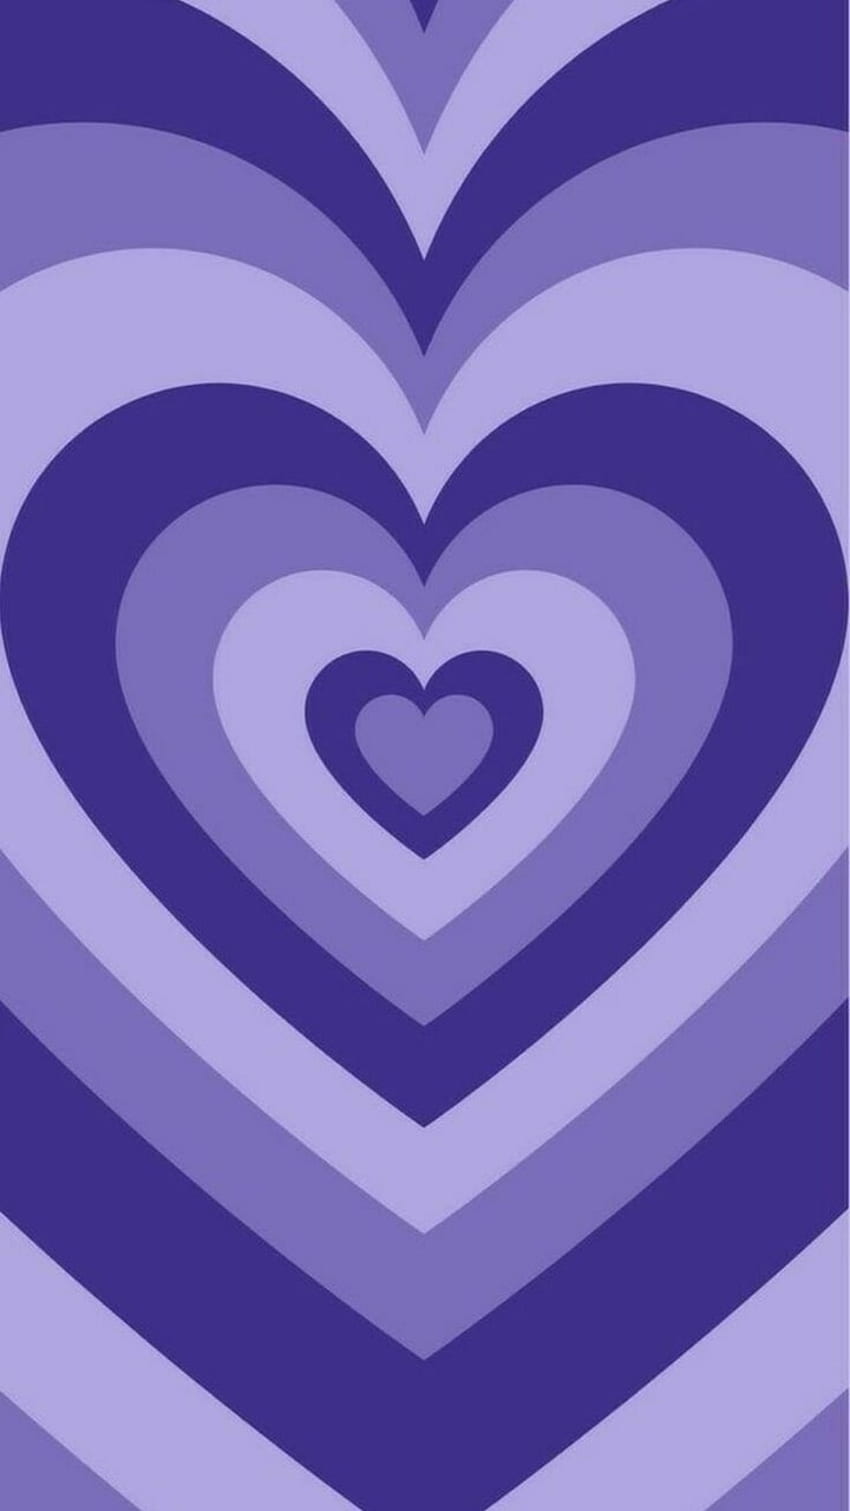 A purple heart shaped pattern on the wall - Heart